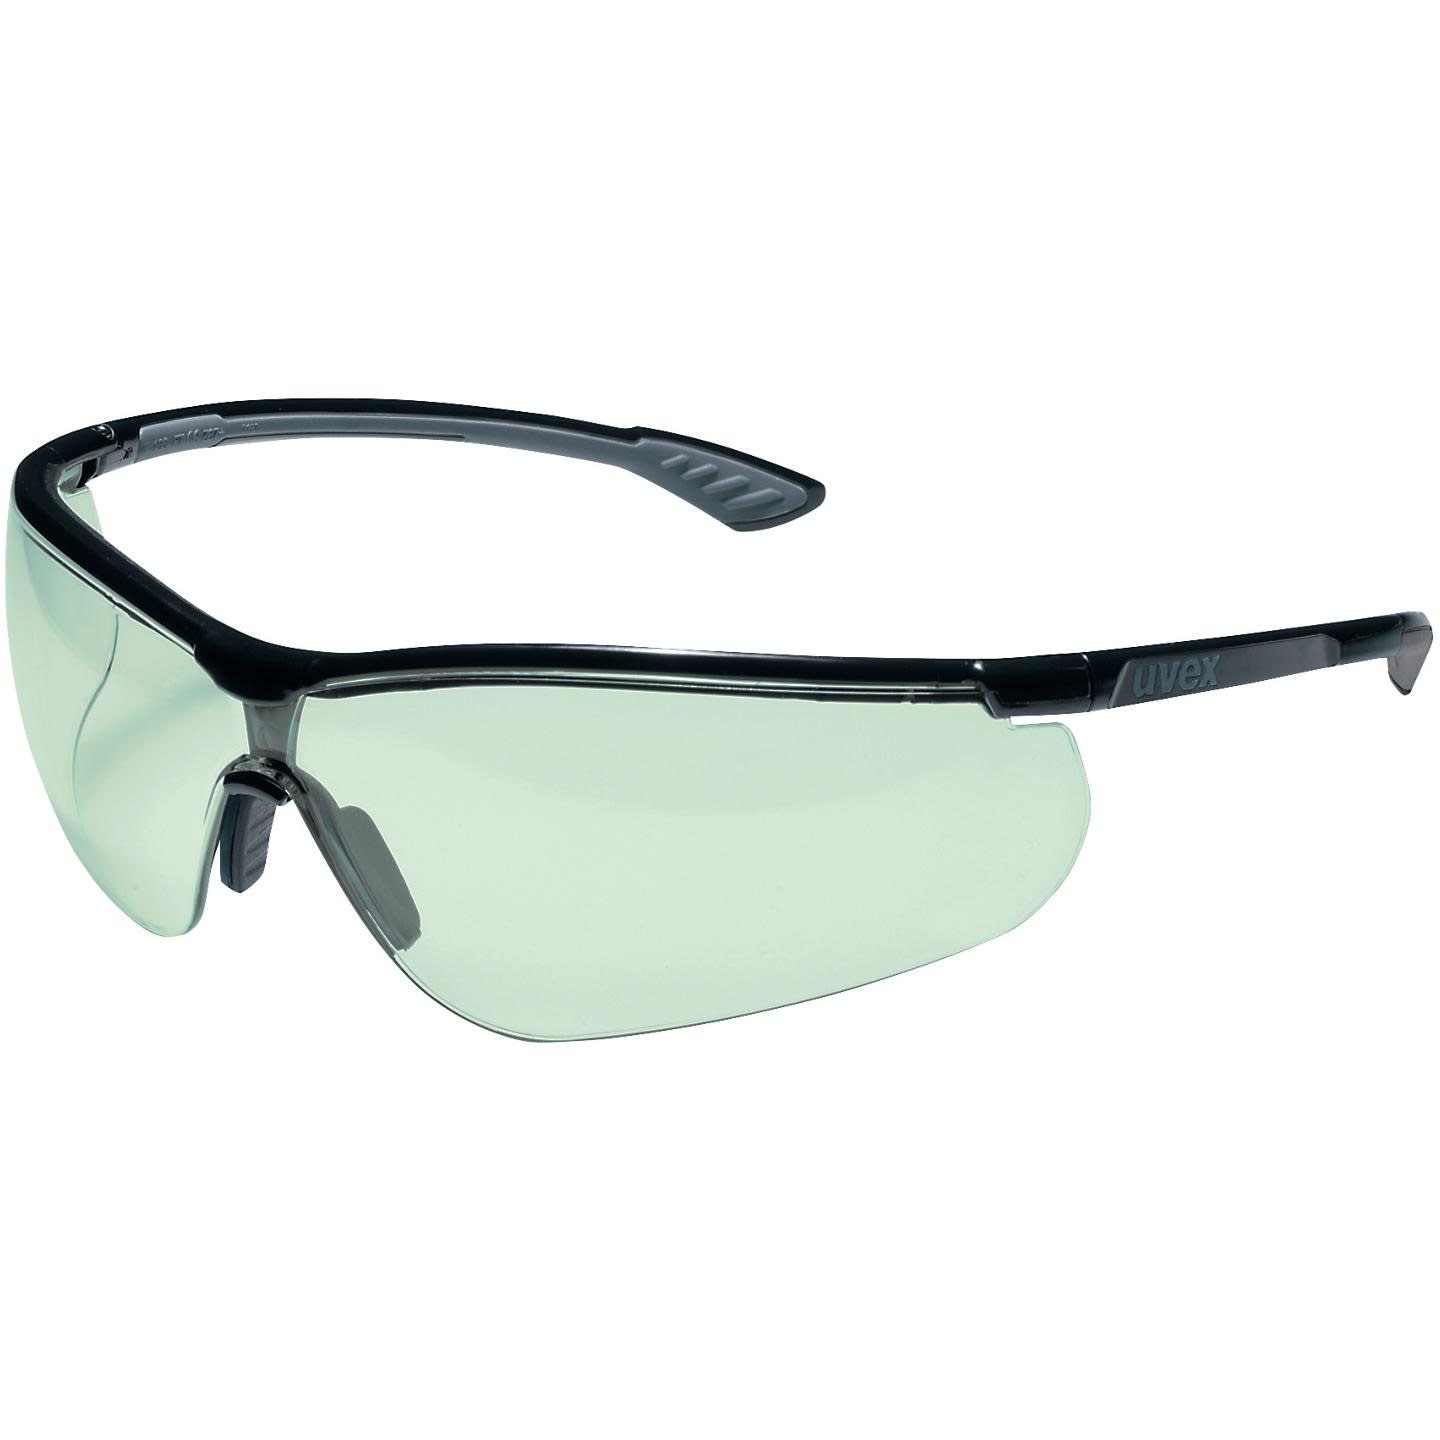 Schutzbrille Uvex sportsstyle selbsttönend schwarz-anthrazit PC leicht grün